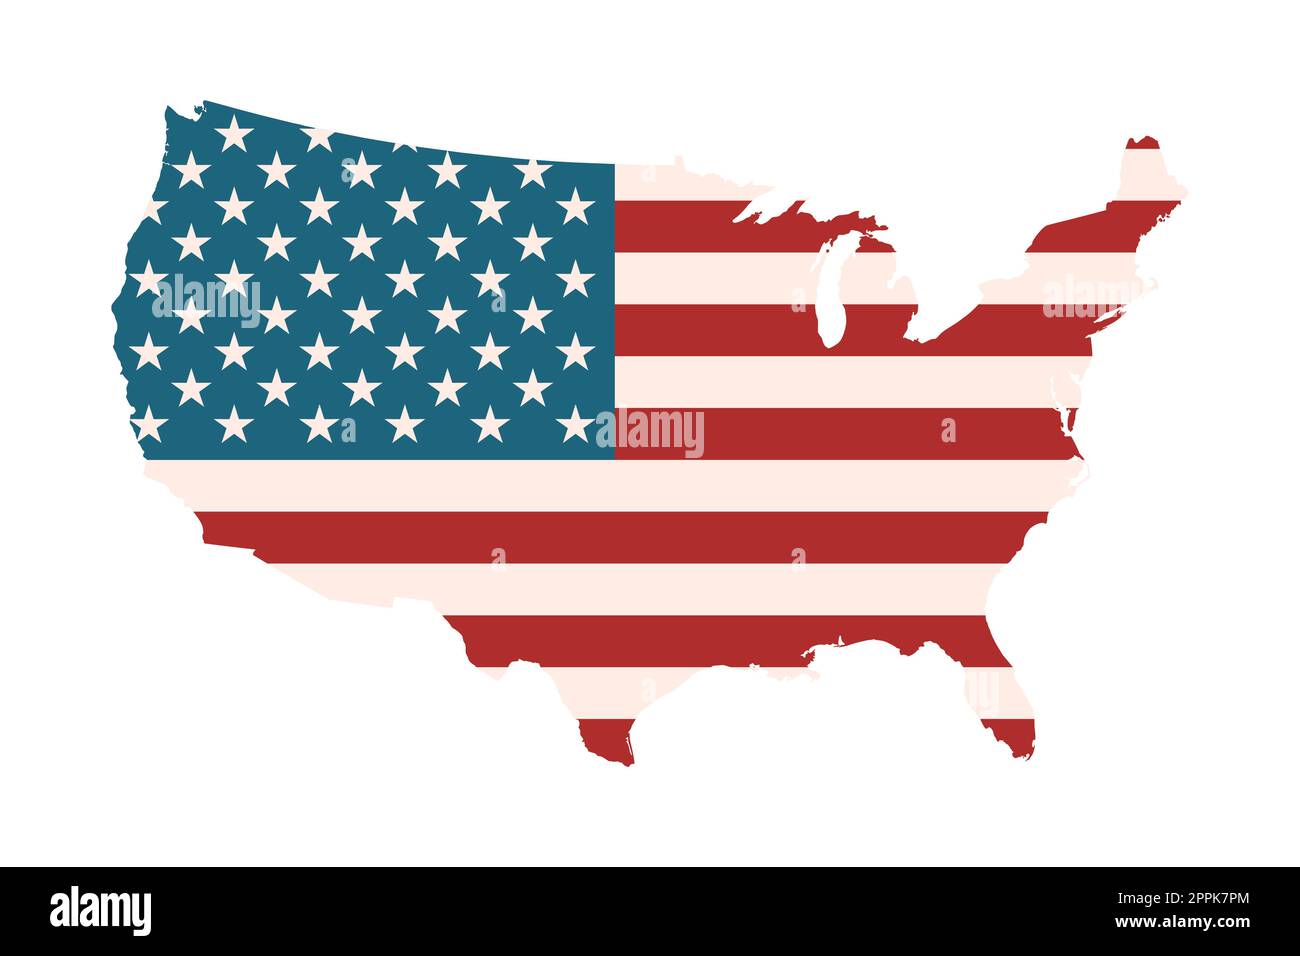 Karte der USA mit amerikanischer Flagge. Nationales Symbol der Vereinigten Staaten von Amerika. Grafisches Design-Element. Isoliert auf weißem Hintergrund. Vintage-Farben. Stock Vektor